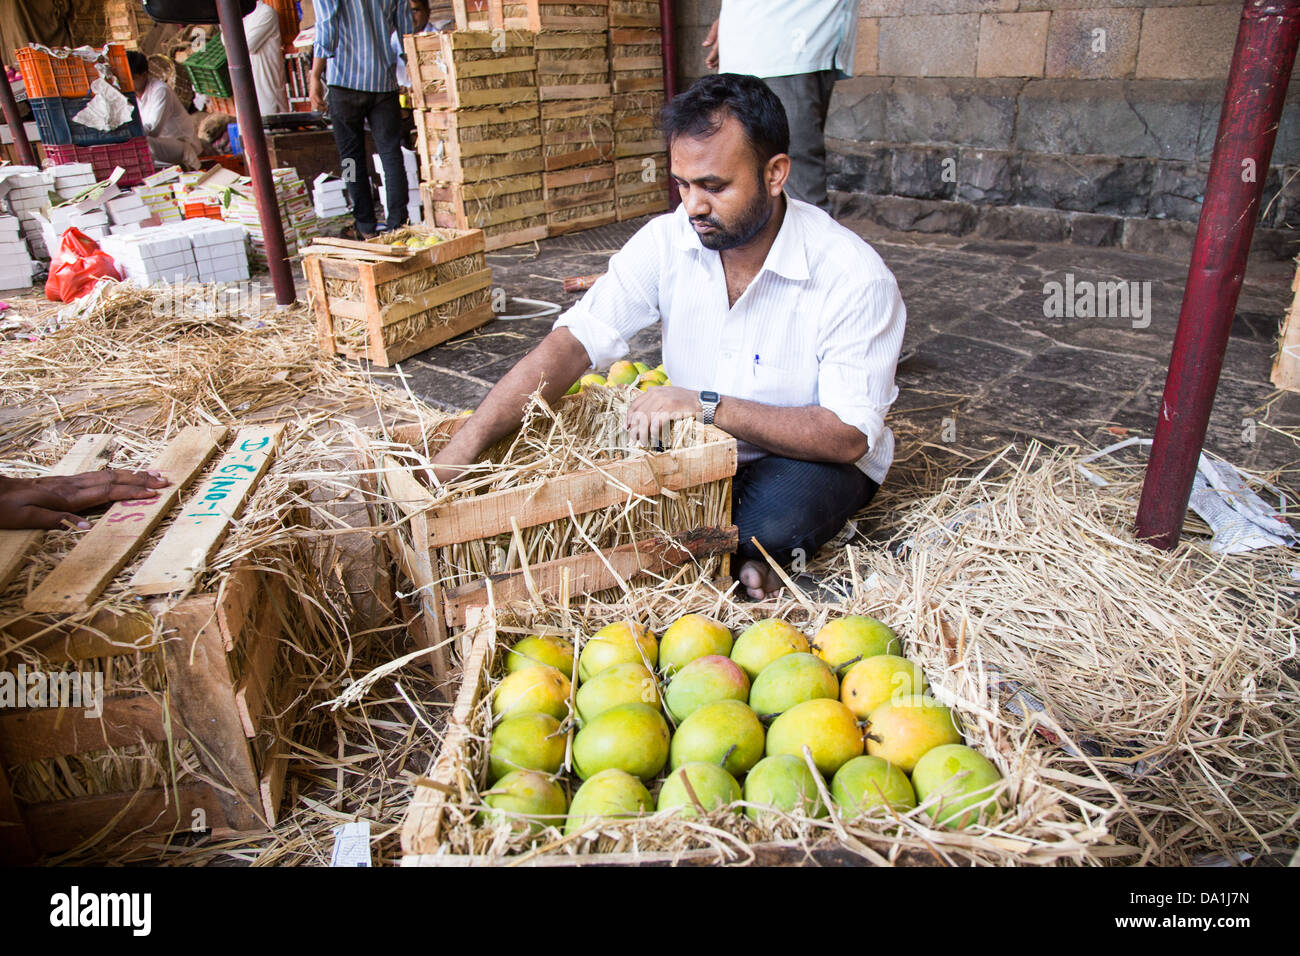 Mangoes in Crawford Market, Mumbai, India Stock Photo